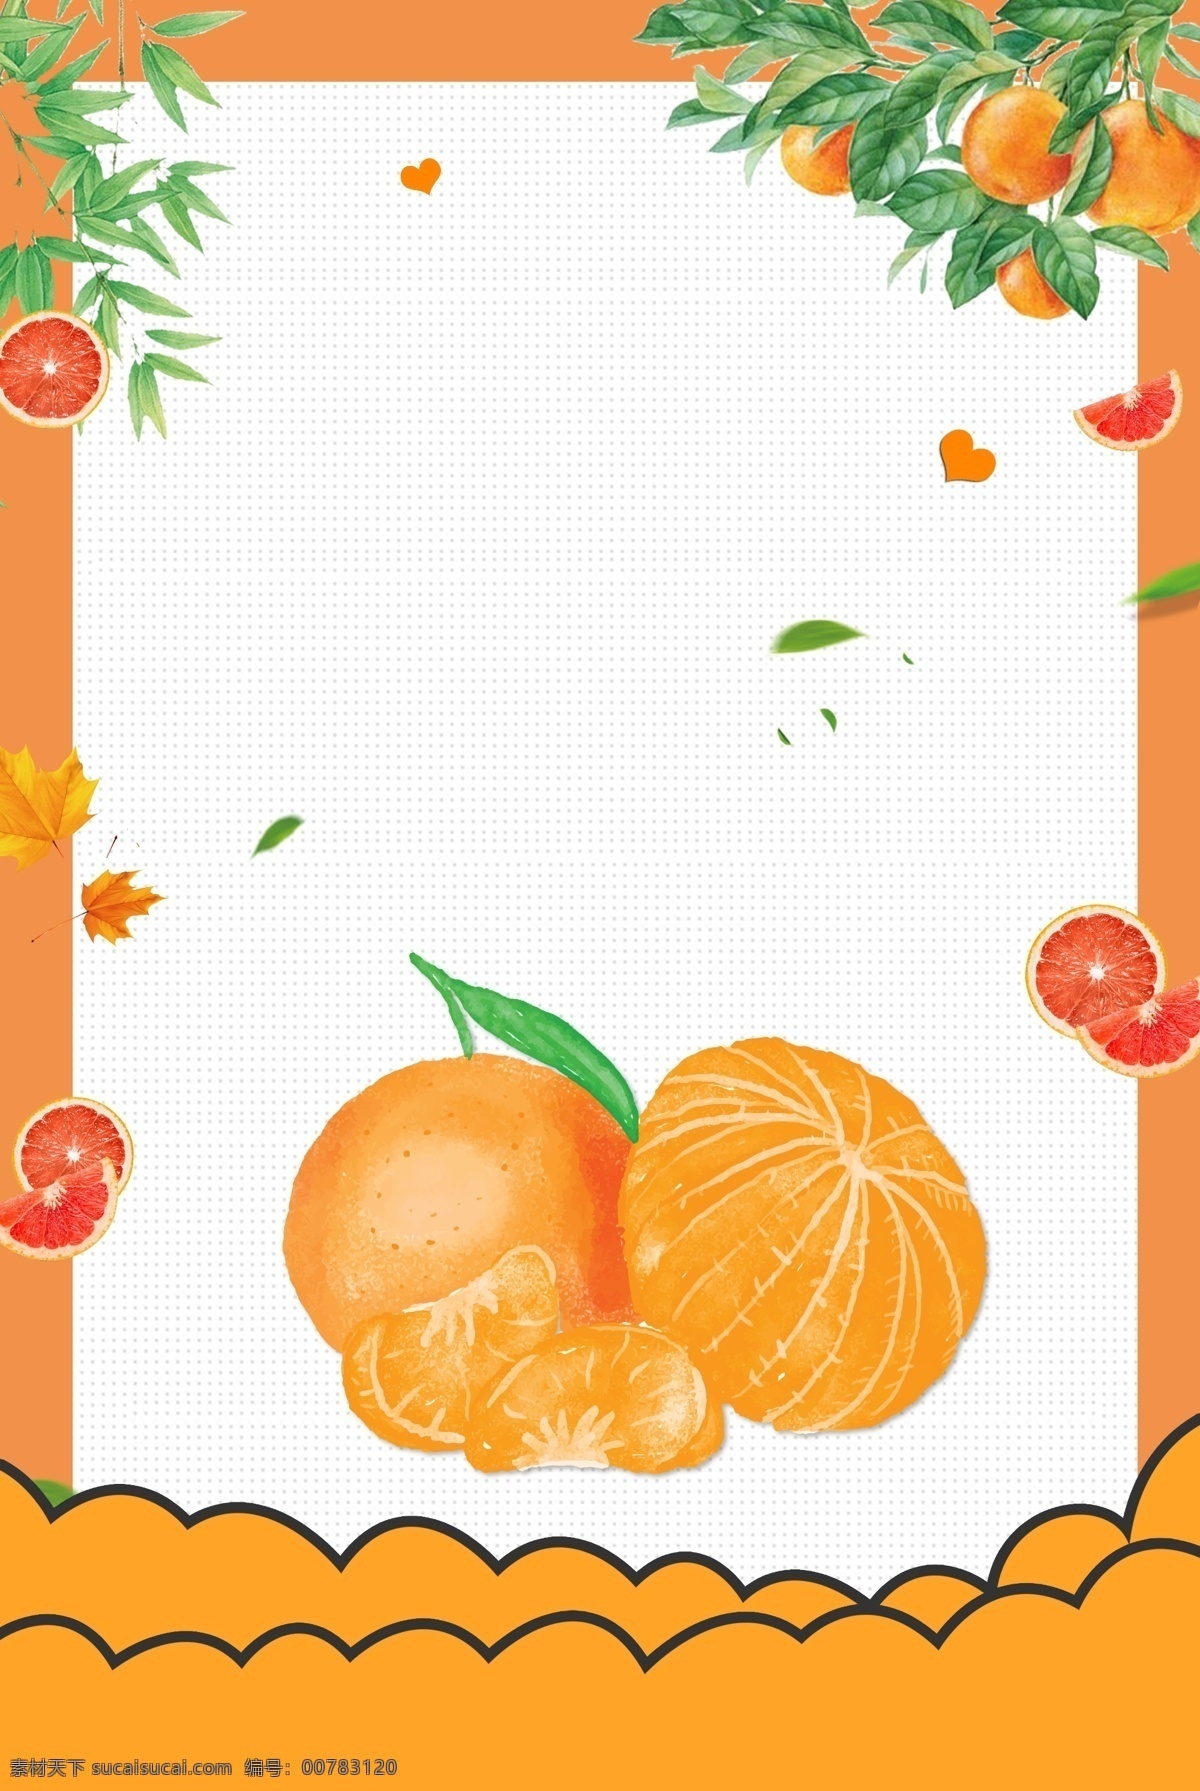 一月 水果 橘子 背景 图 柑橘 桔子 一月水果 水果背景 柑橘背景 水果店背景 水果促销 水果素材 温暖